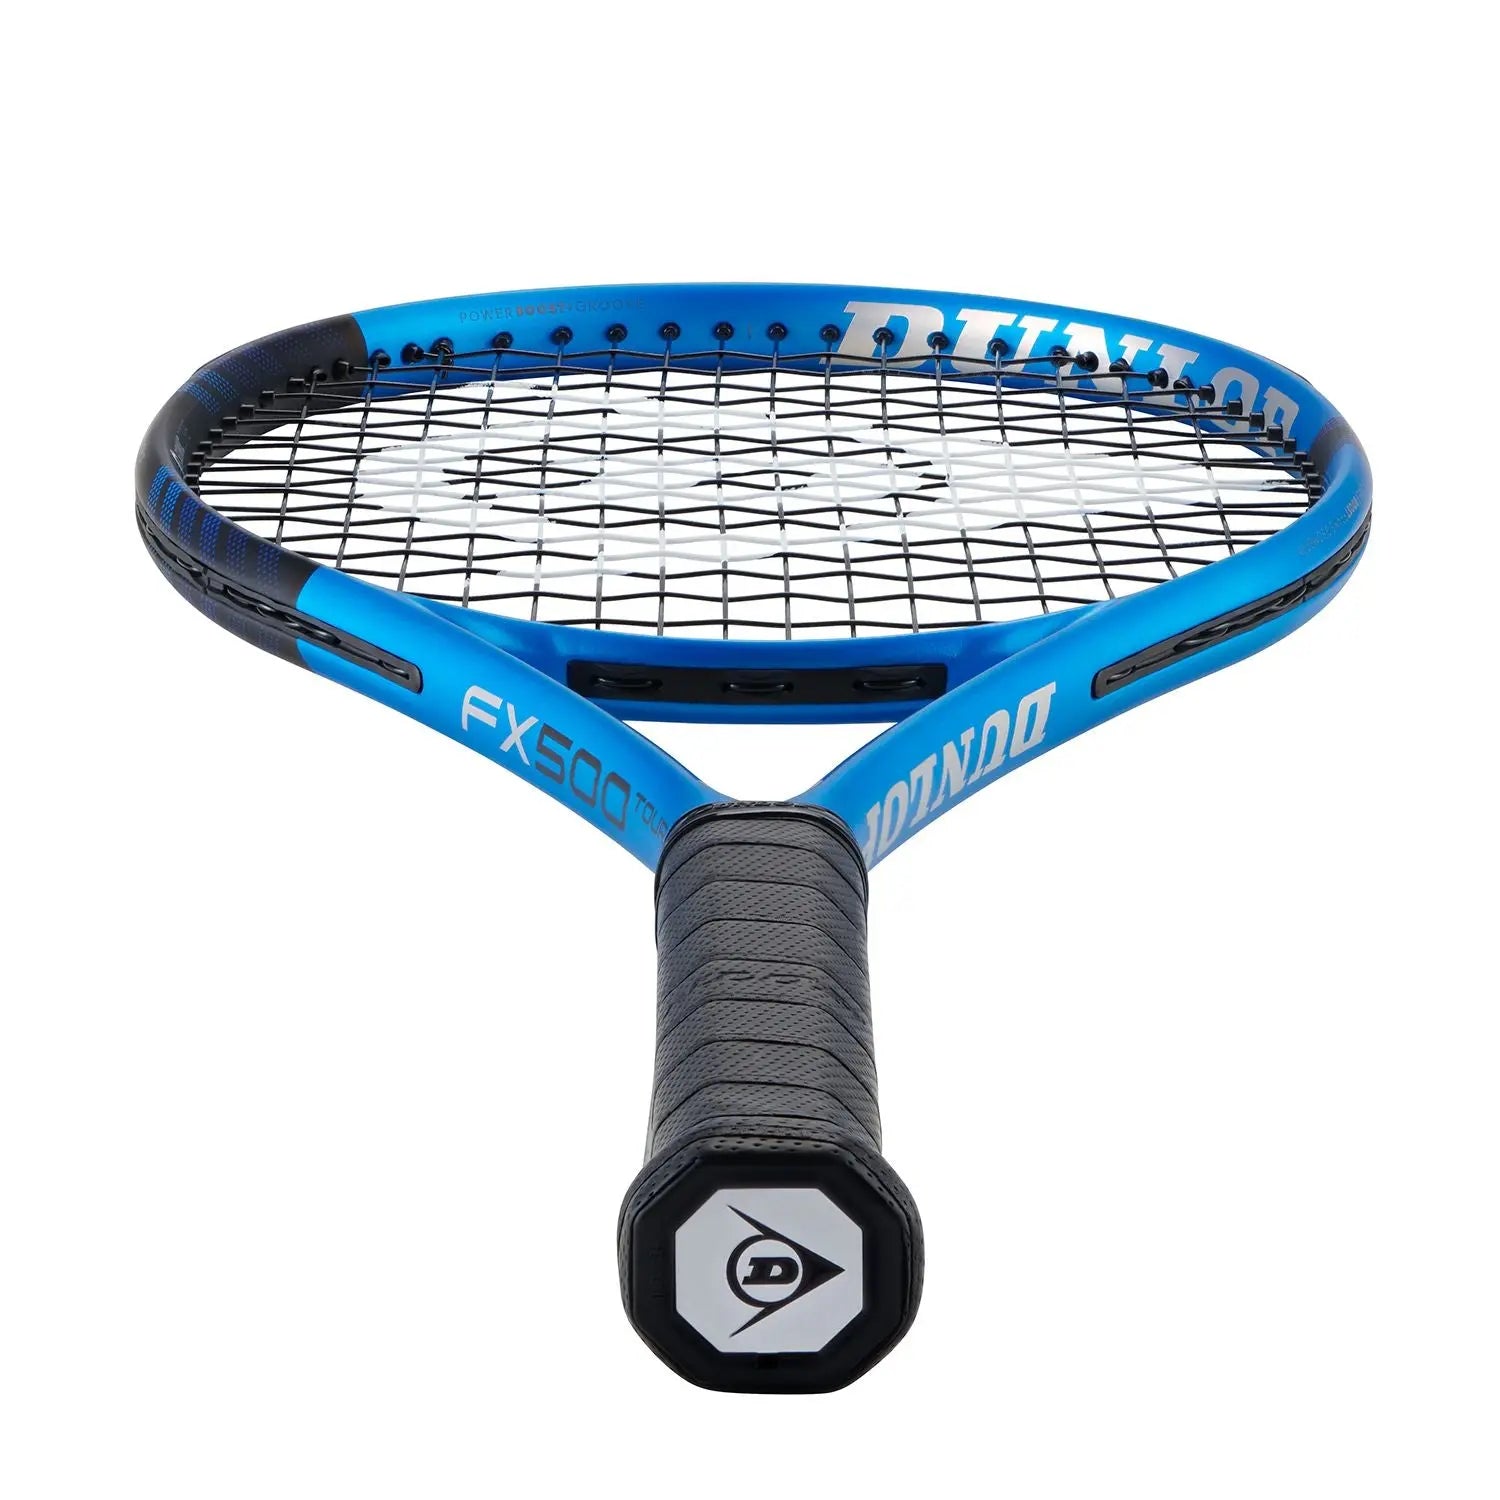 Dunlop FX 500 TOUR 2023 Tennis Racquet Racquet Point